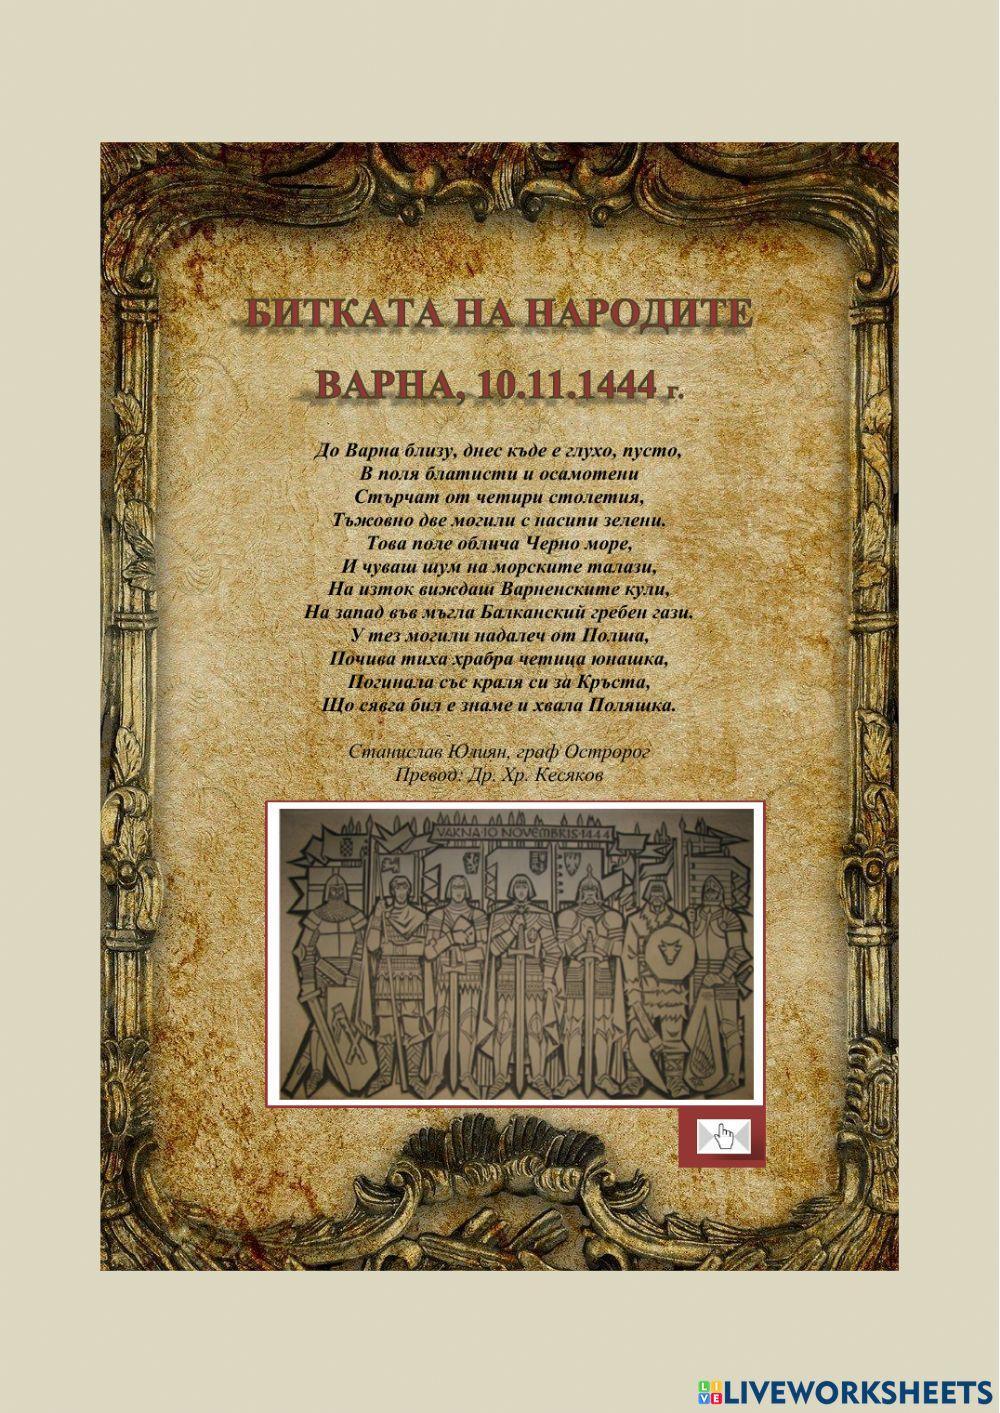 Битката на народите, Варна 10.11.1444 г.